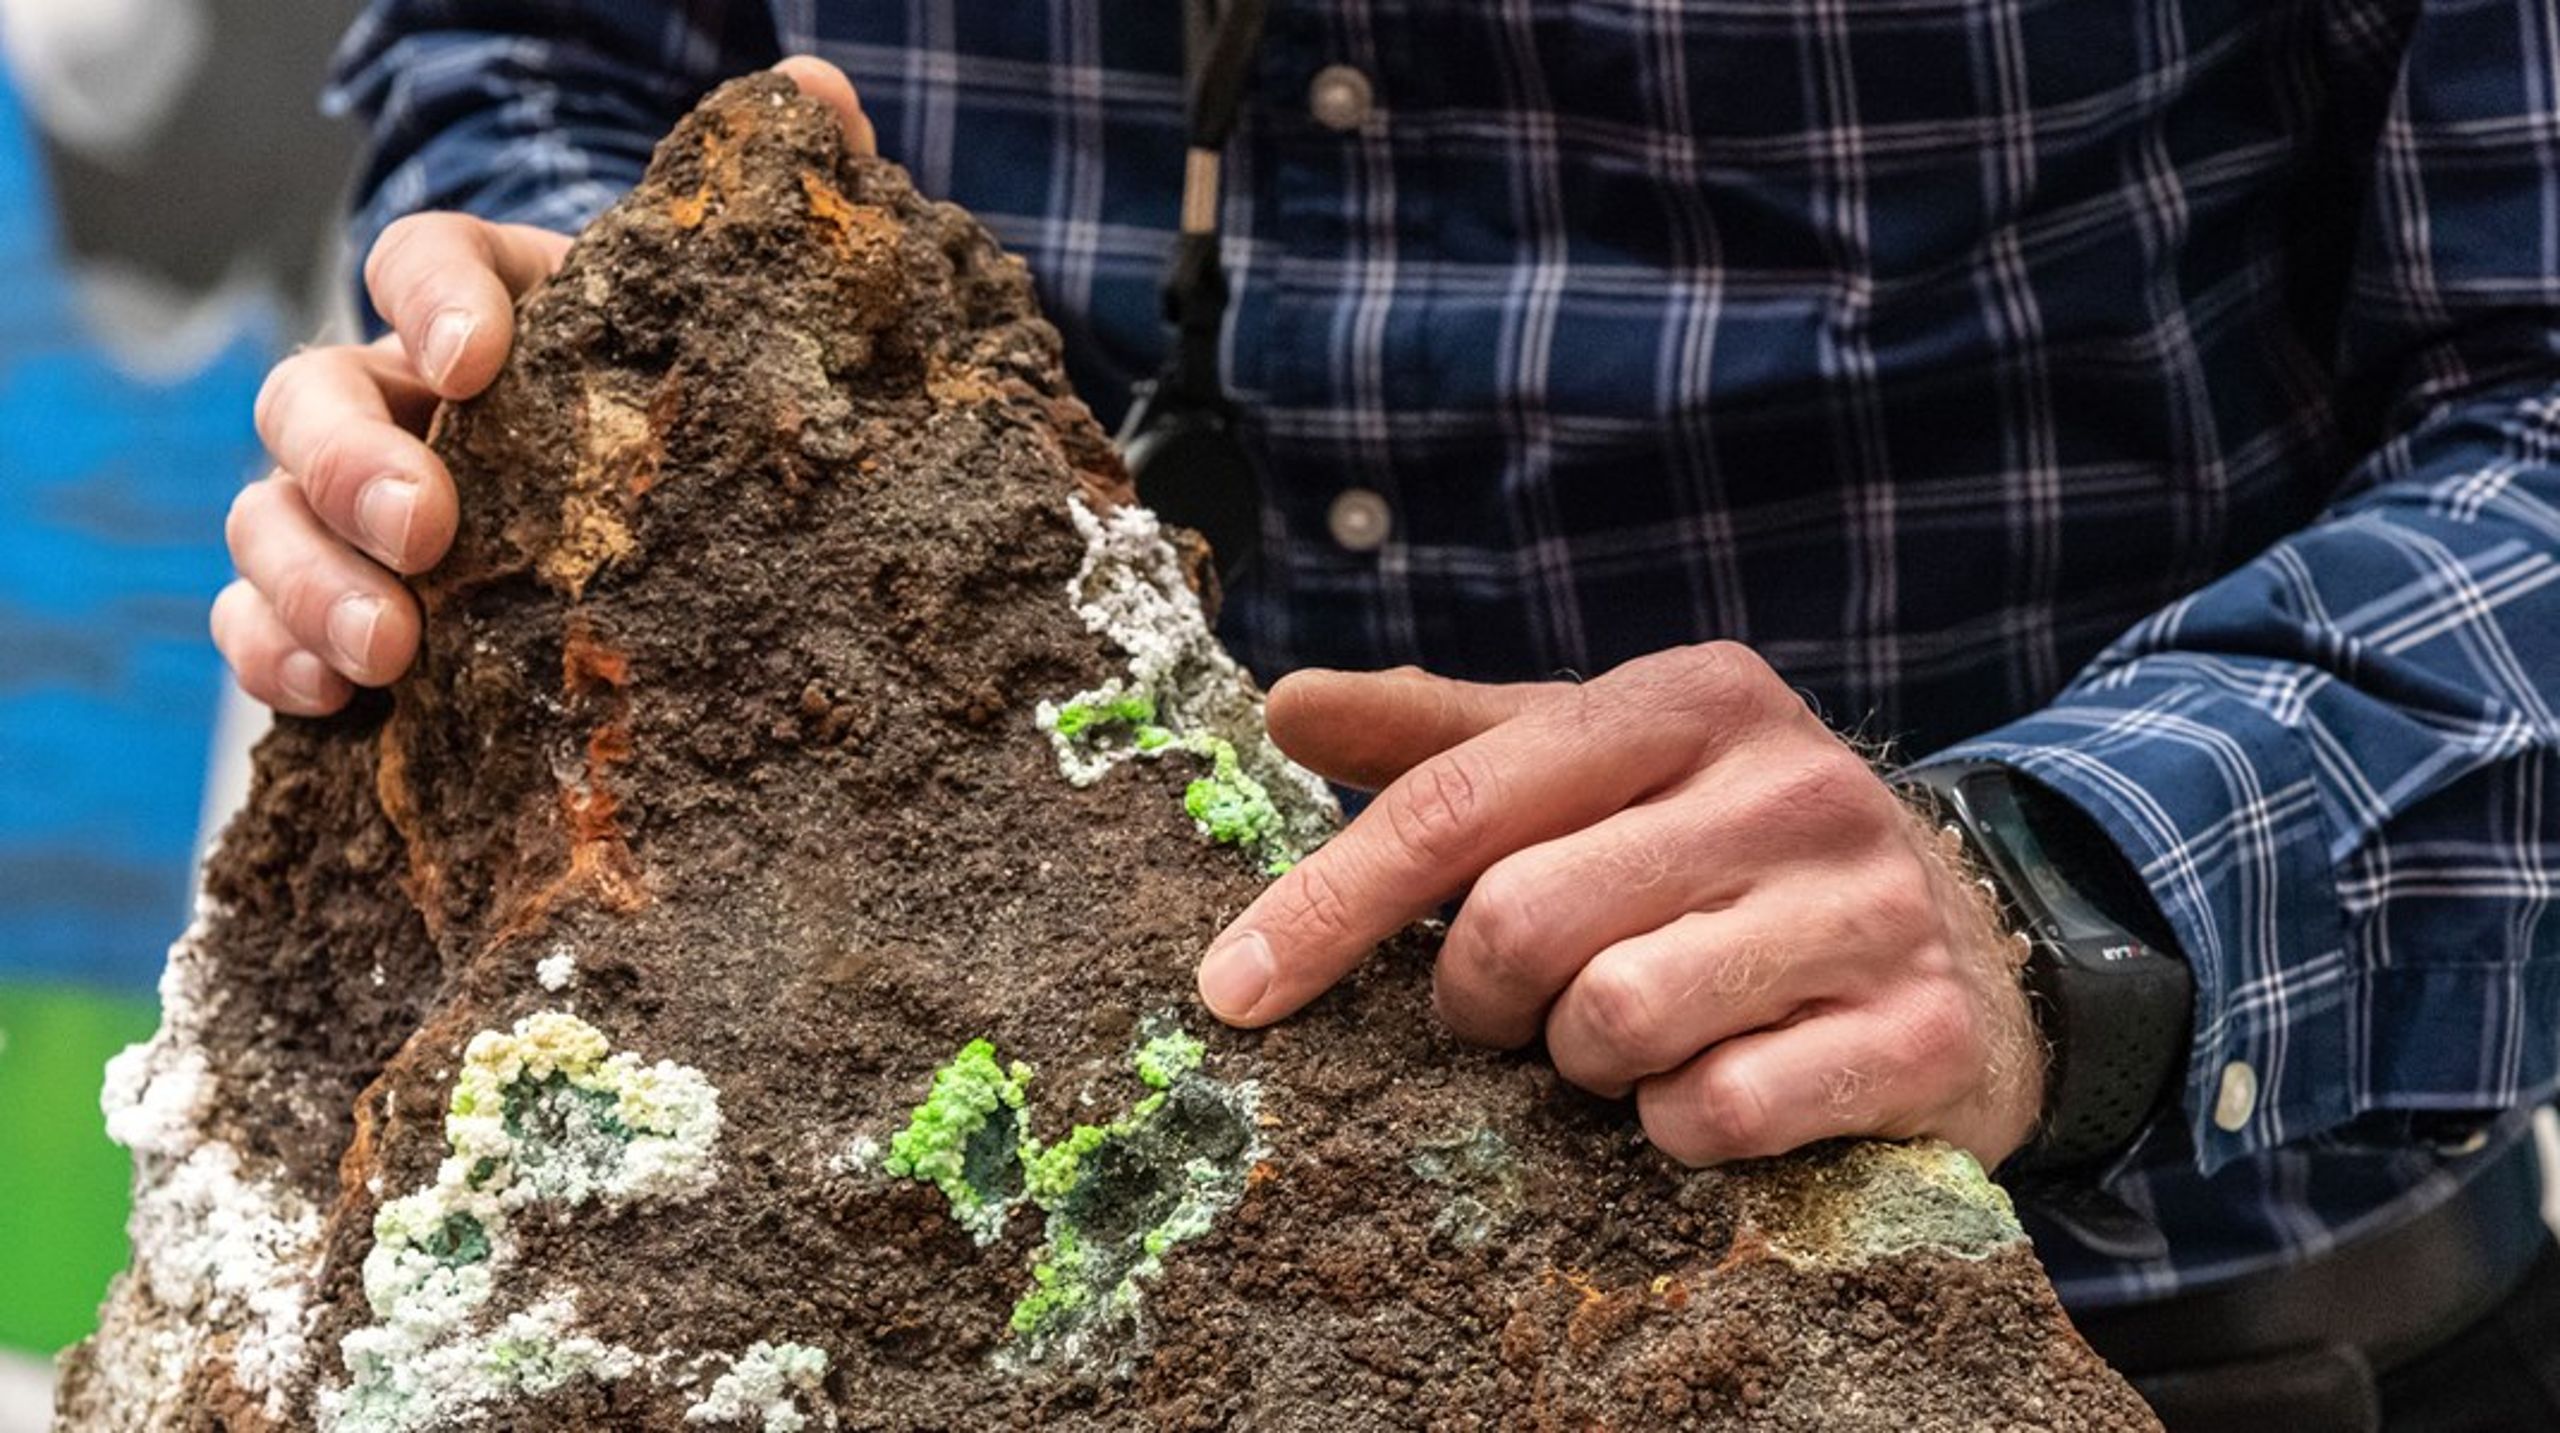 Det grønne skiftet trenger mineraler. Kommer norsk gruvirksomhet til å spille en rolle? Hva med utvinning av havbunnsmineraler? Bildet viser en grønn utfelling av kobbermineral på en mørkere sulfidprøve samlet inn av Ojedirektoratet ved Mohnsryggen på havbunnen i 2020.